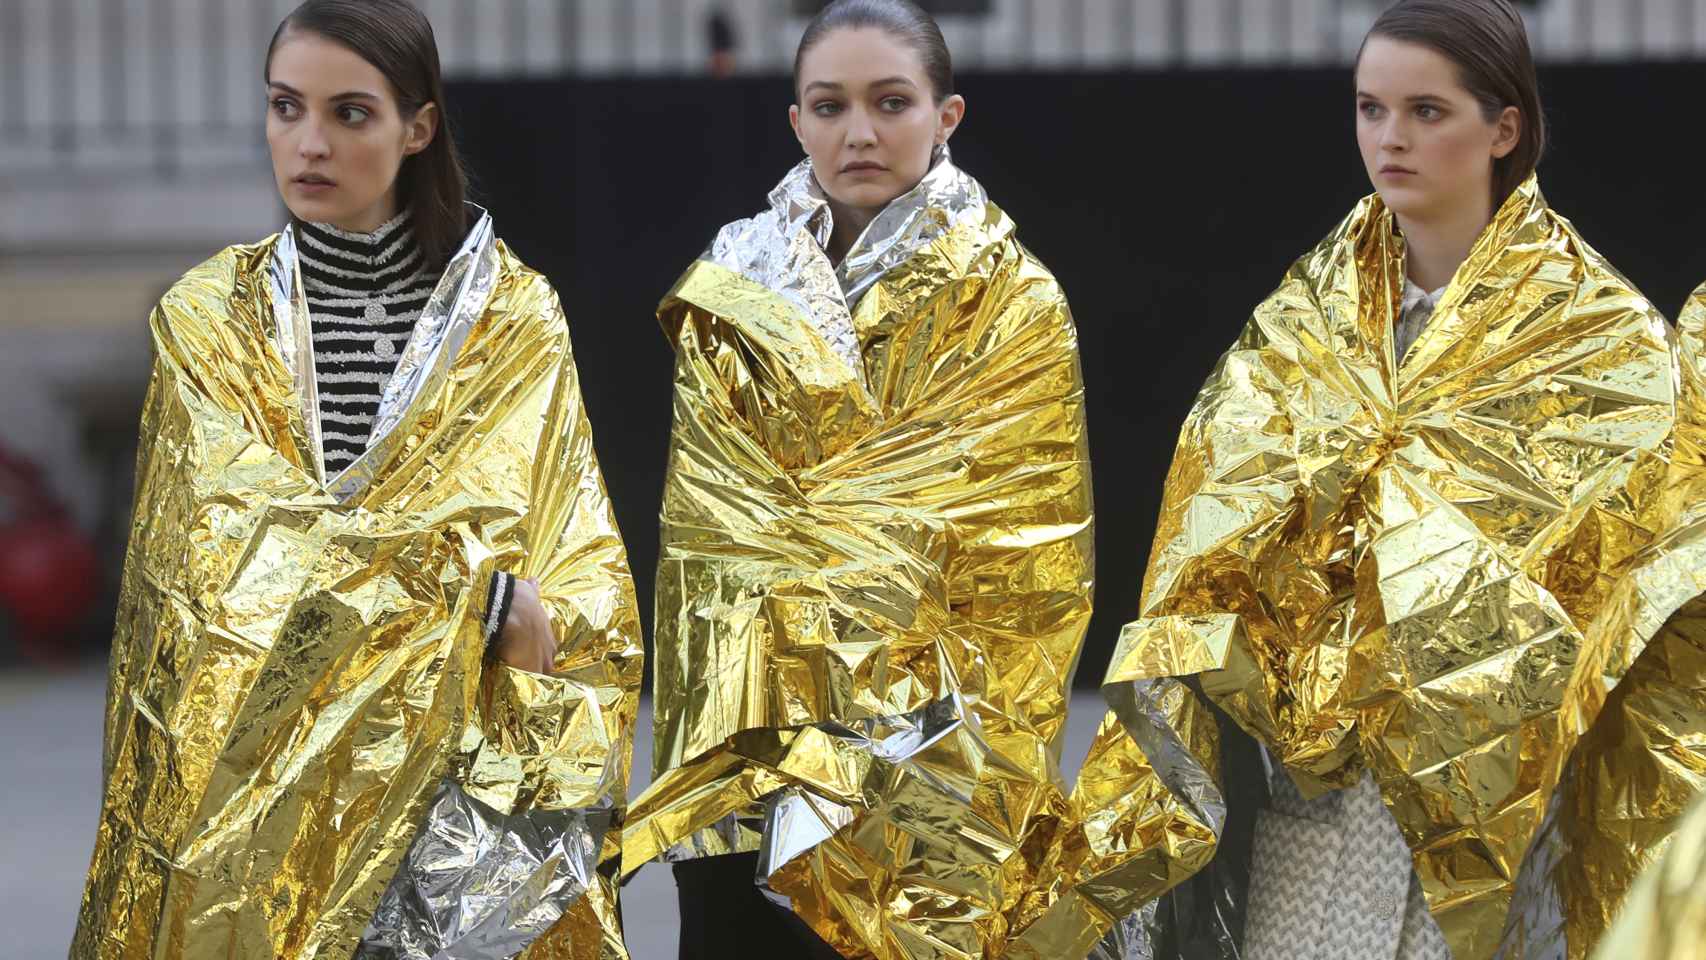 Las modelos de Chanel, con Gigi Hadid en el centro, no viajarán a Pekín por miedo al coronavirus.